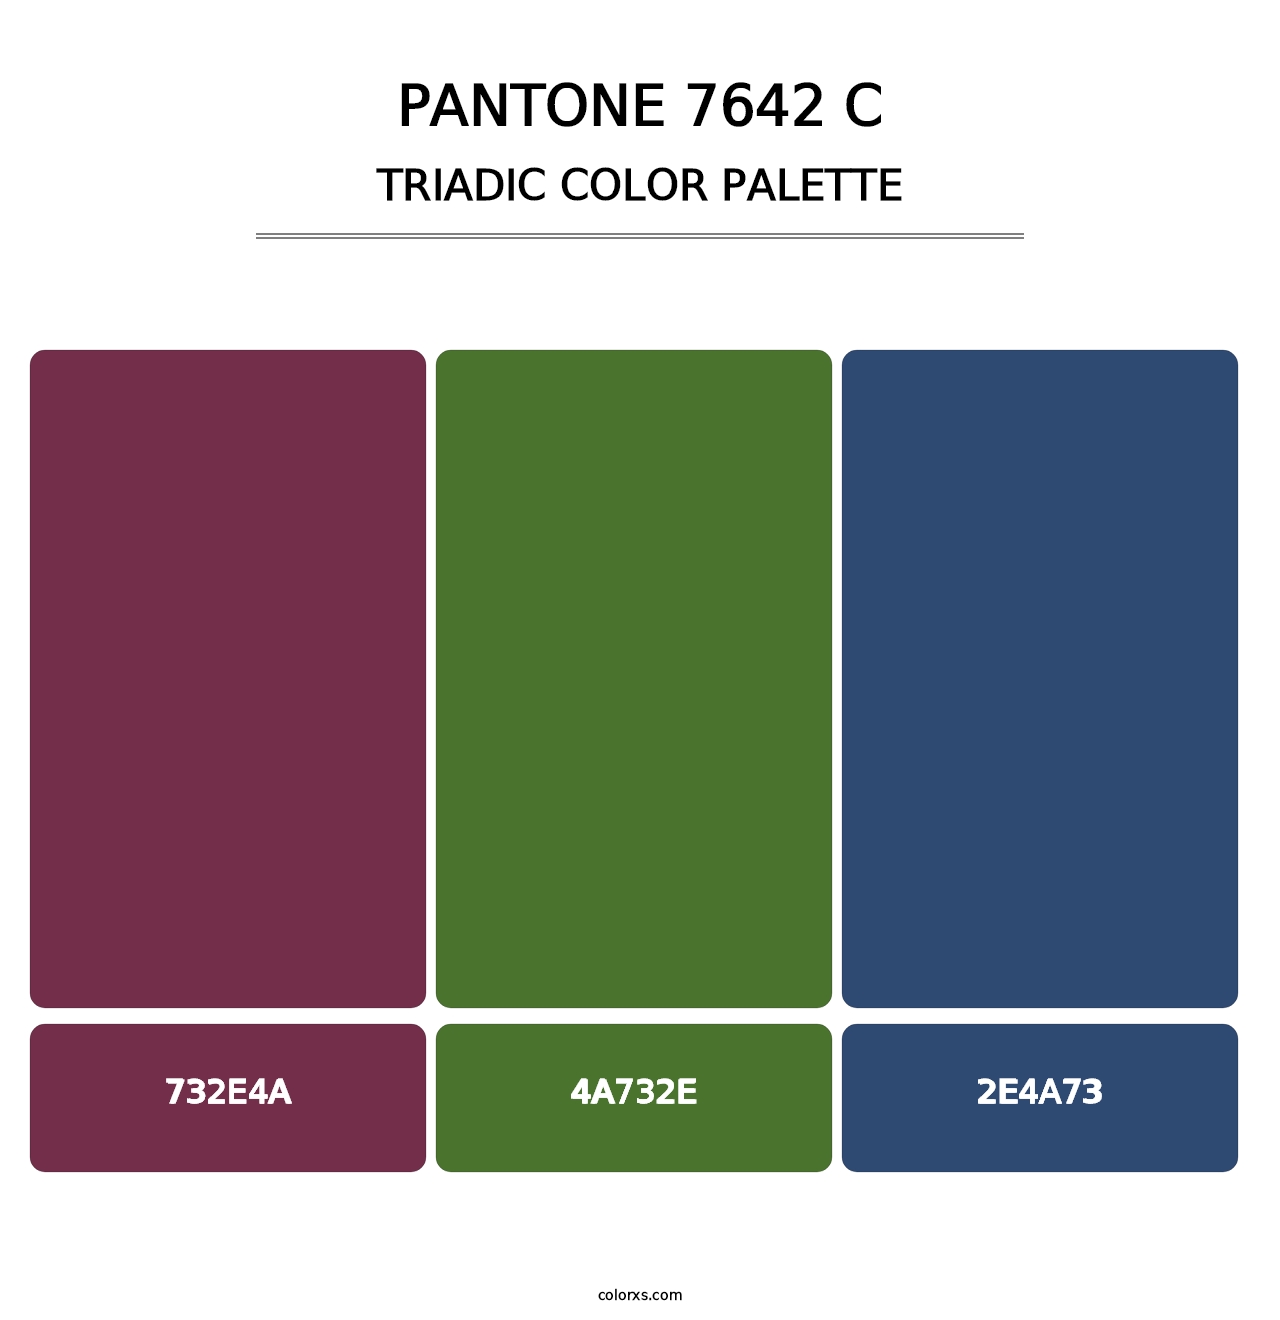 PANTONE 7642 C - Triadic Color Palette